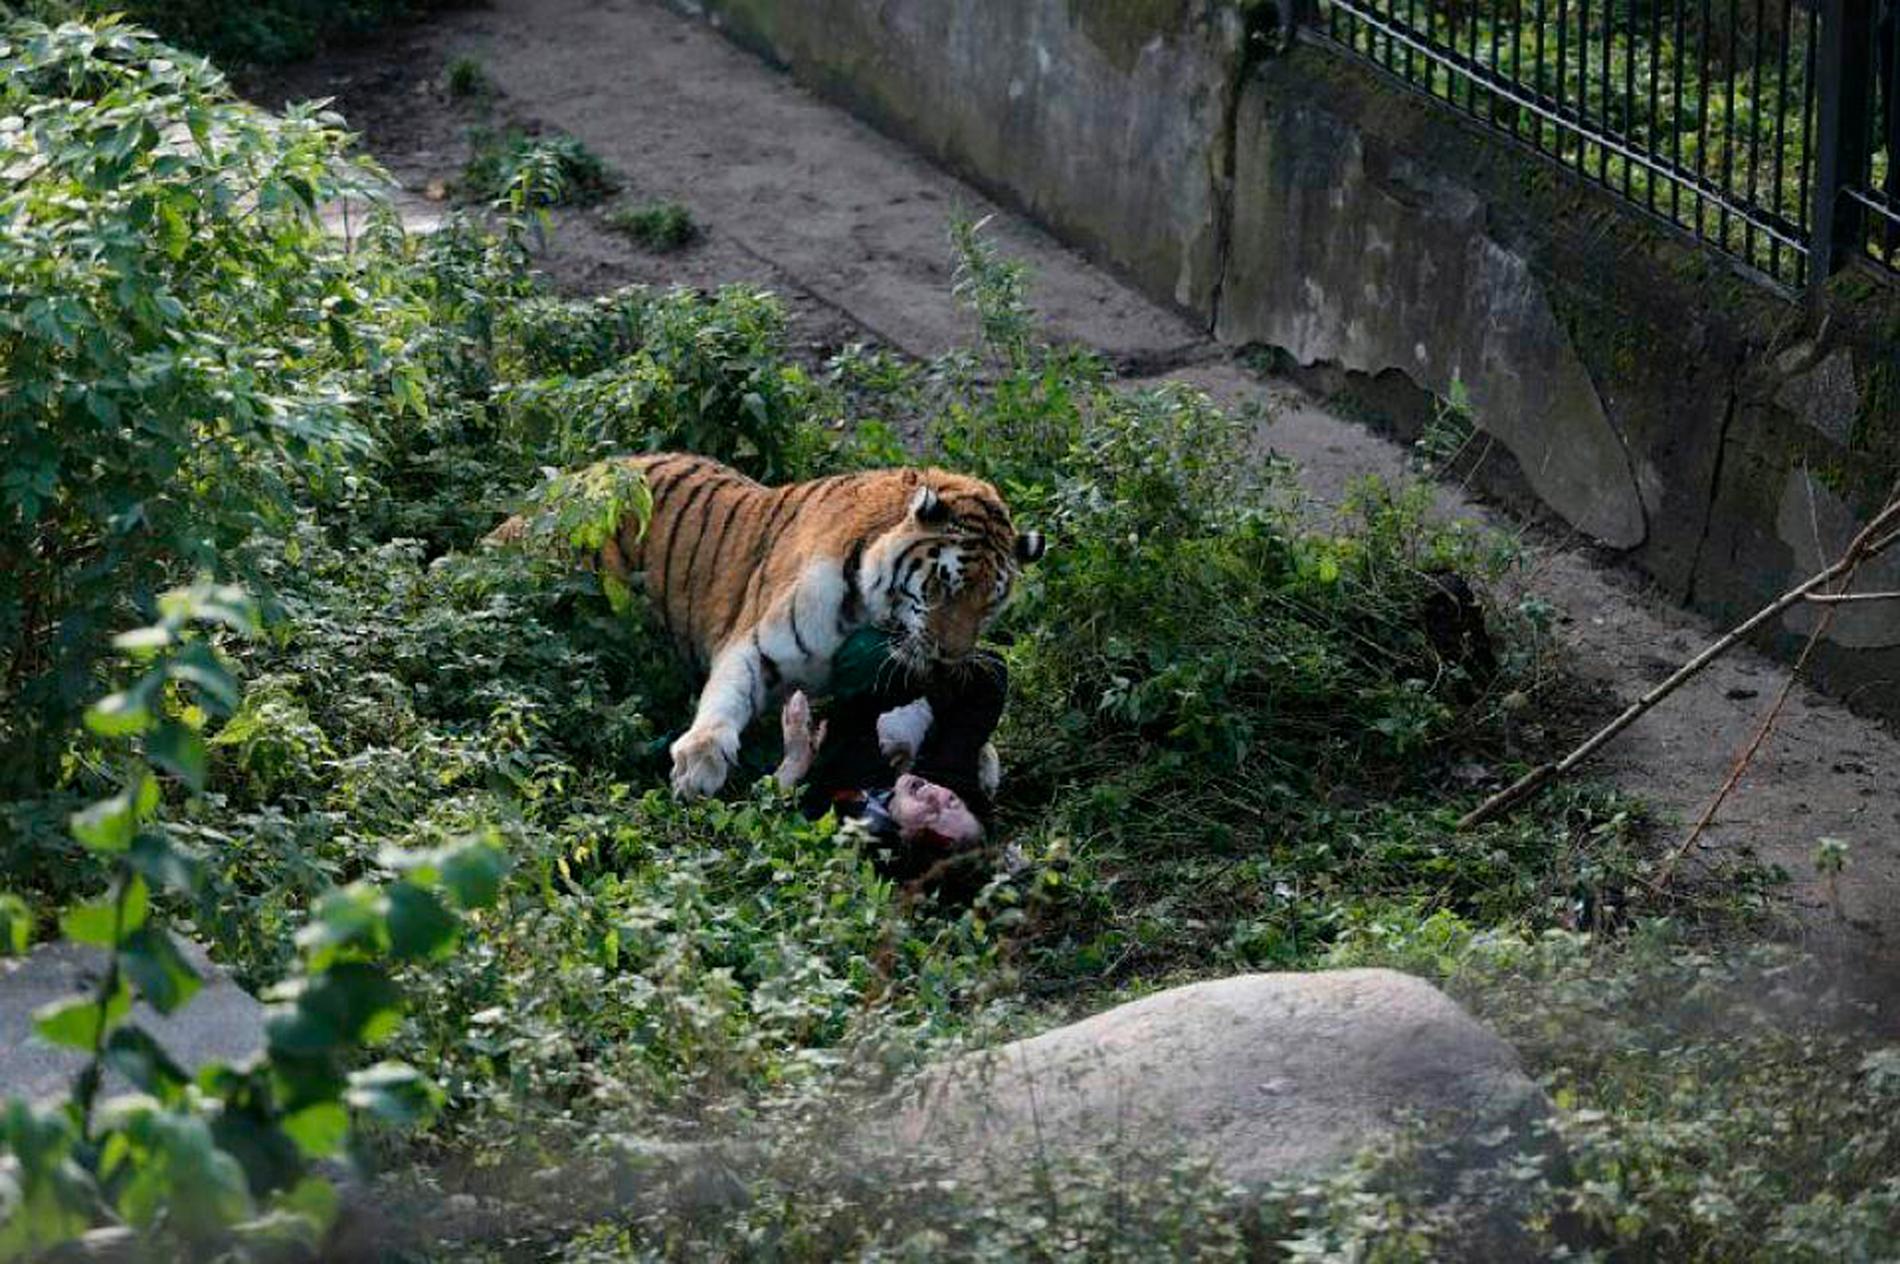 Djurparksbesökarna blev vittnen till attacken. Det var även de som räddade kvinnan genom att kasta sten och kaféinredning på tigern. 